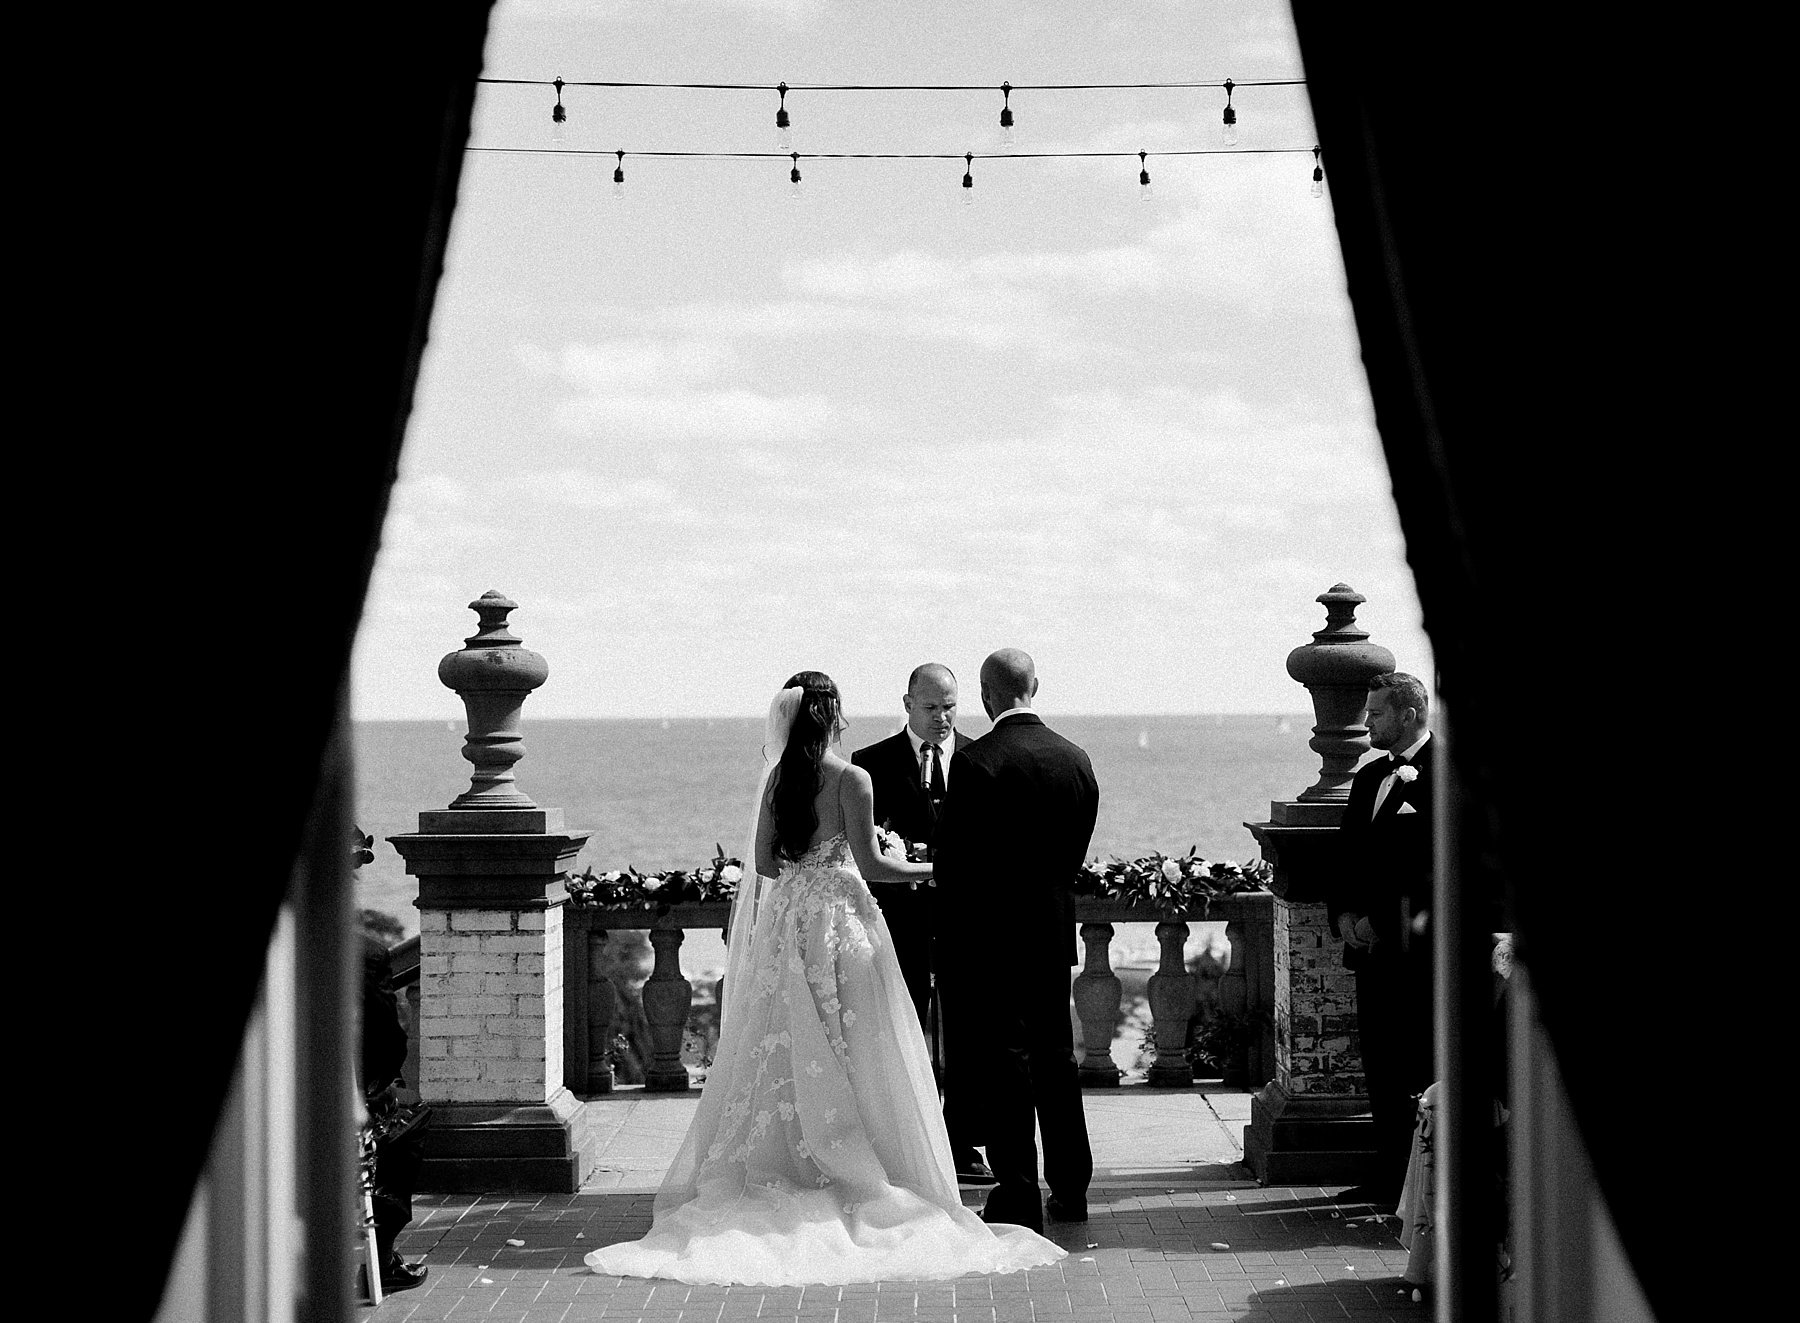 Outdoor Ceremony Overlook Lake Michigan at Villa Terrace Wedding Venue